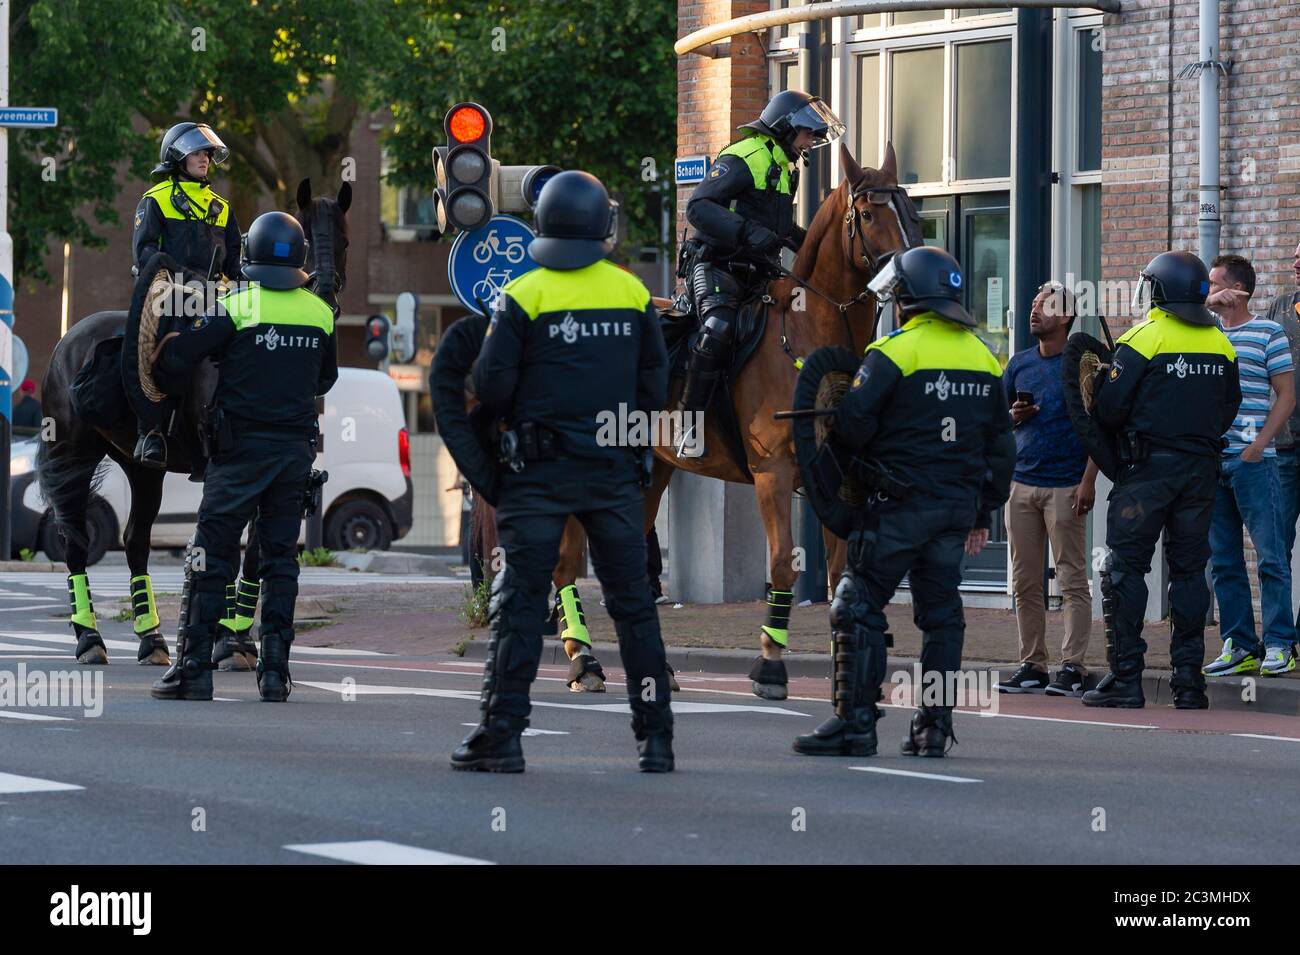 HOORN, PAYS-BAS - JUIN 19 : garde de police dans les environs de la statue de Jan Pieterszoon Coen le 19 juin 2020 à Hoorn, pays-Bas Banque D'Images